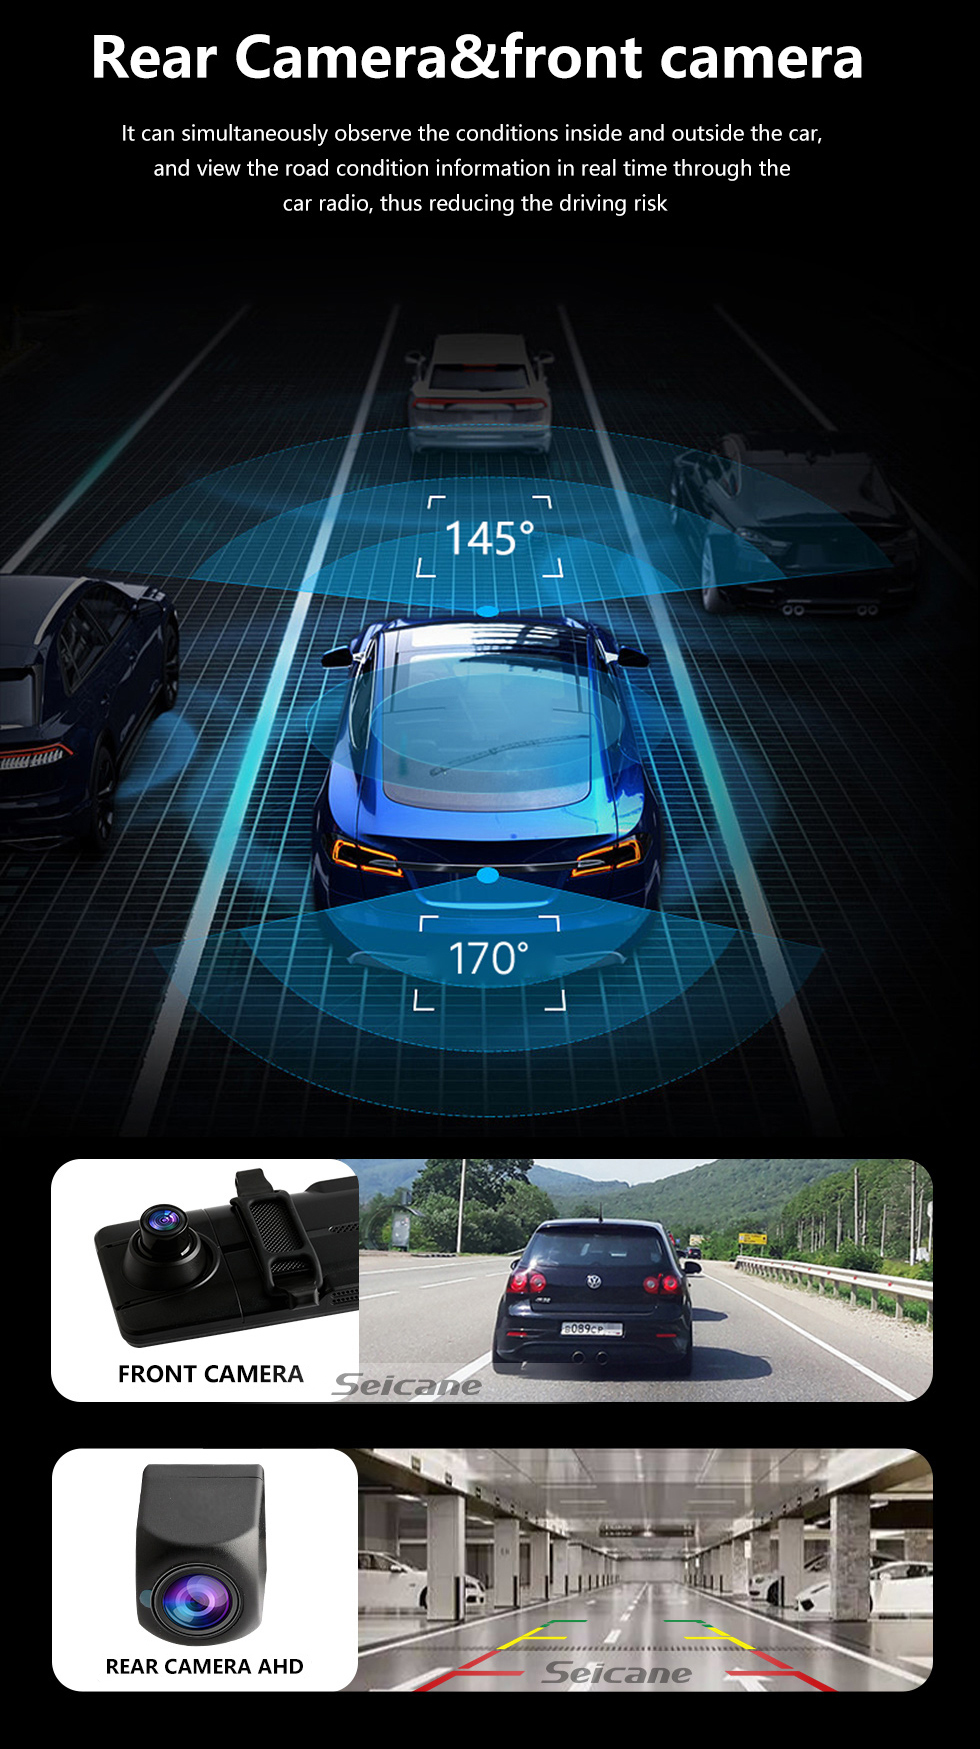 Topshop Dashcam et caméra de recul - Écran tactile Dvr de voiture - Dual  objectif 